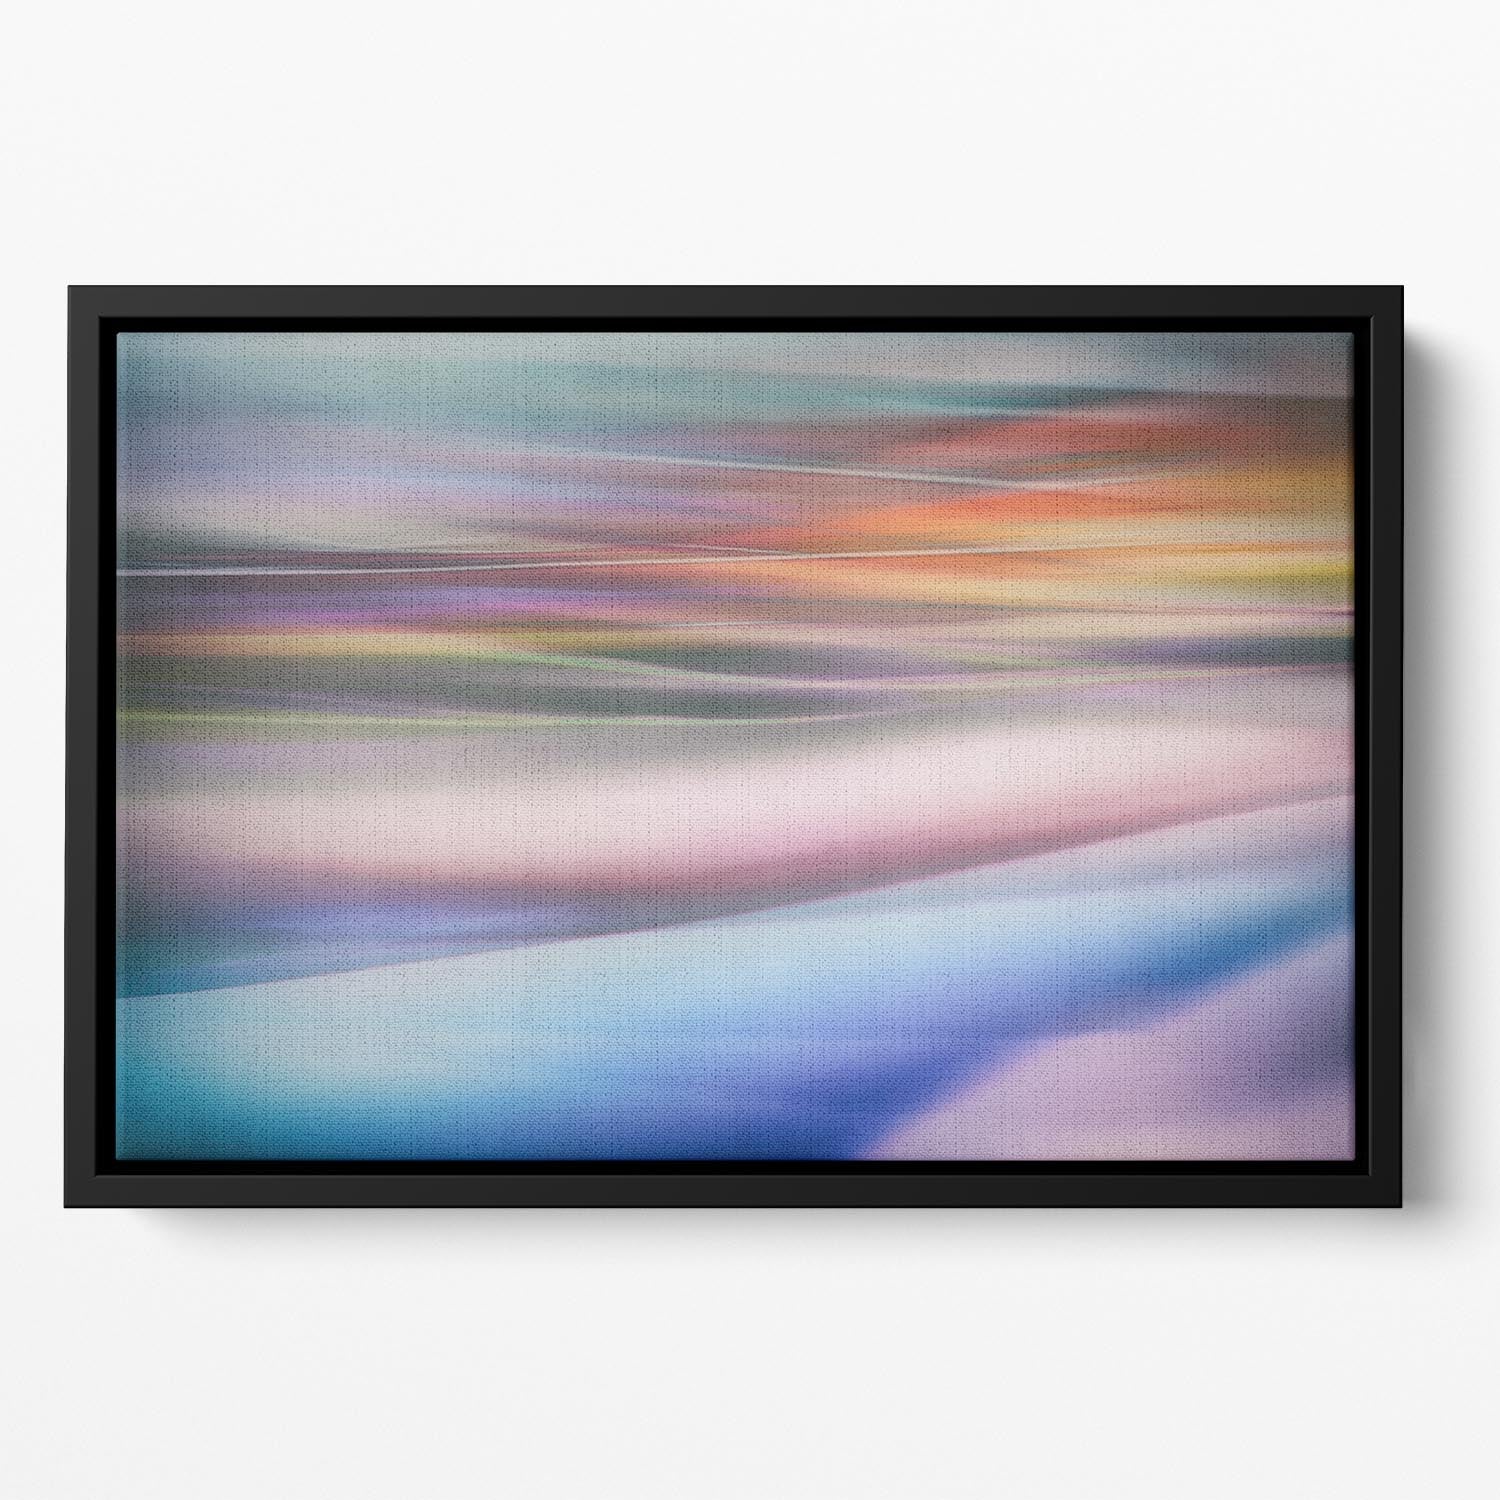 Coloured Waves 2 Floating Framed Canvas - Canvas Art Rocks - 2